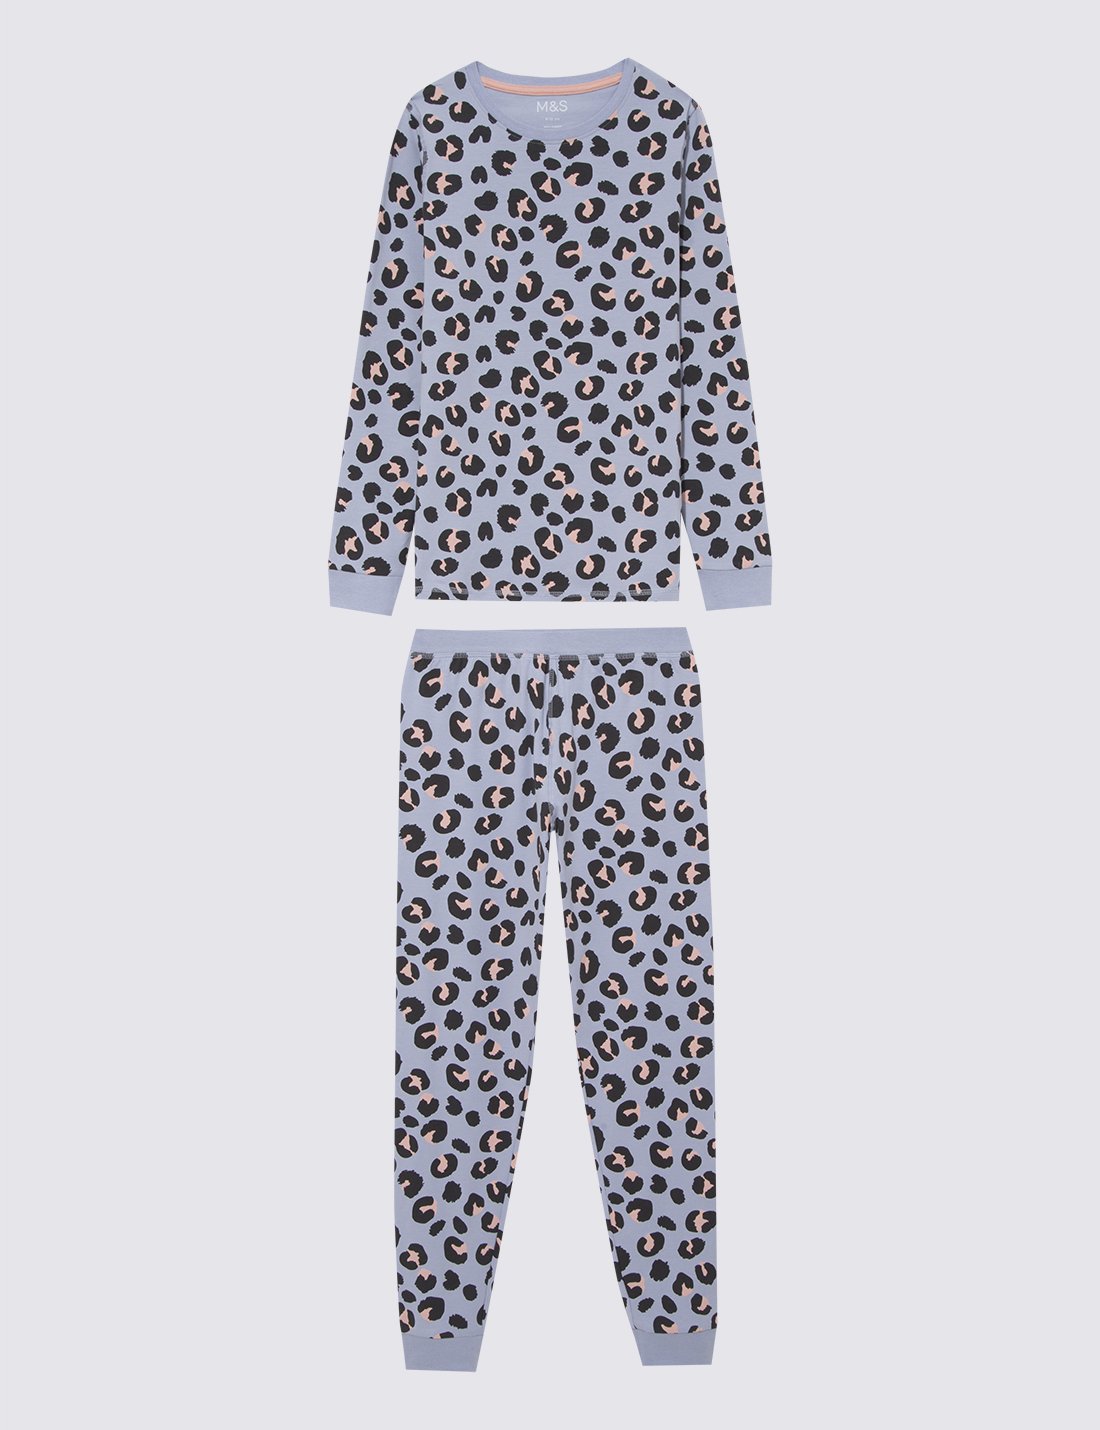 Leopar Desenli Pijama Takımı